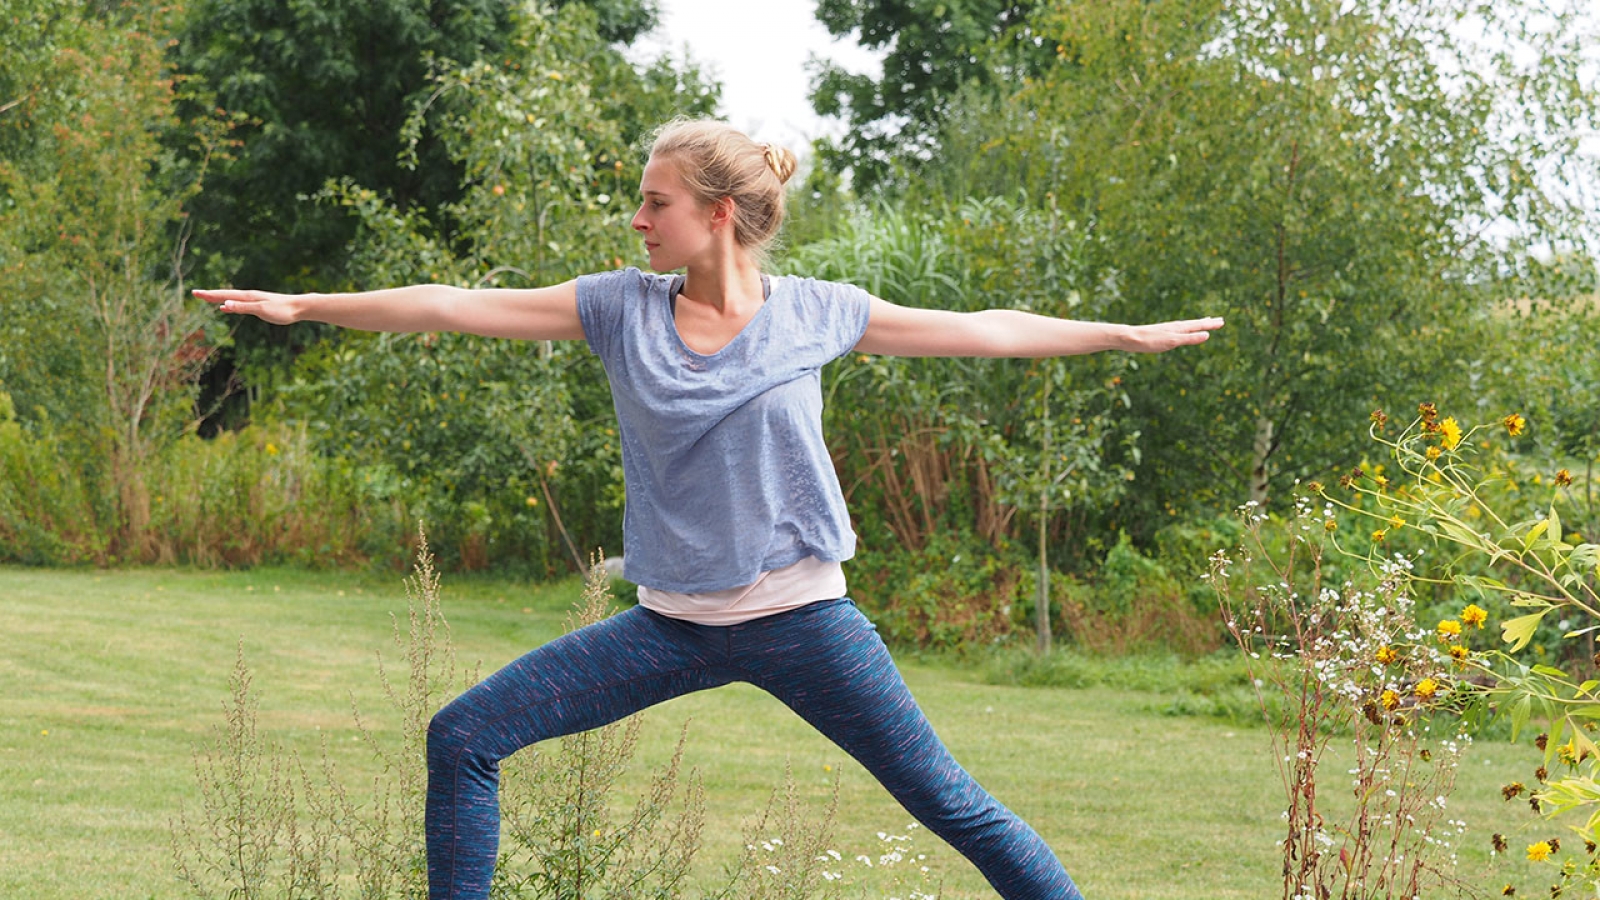 Sich zum Yoga üben aufzuraffen, fällt manchmal ganz schön schwer. Ich habe 4 Tipps für dich, die dir dabei helfen können.